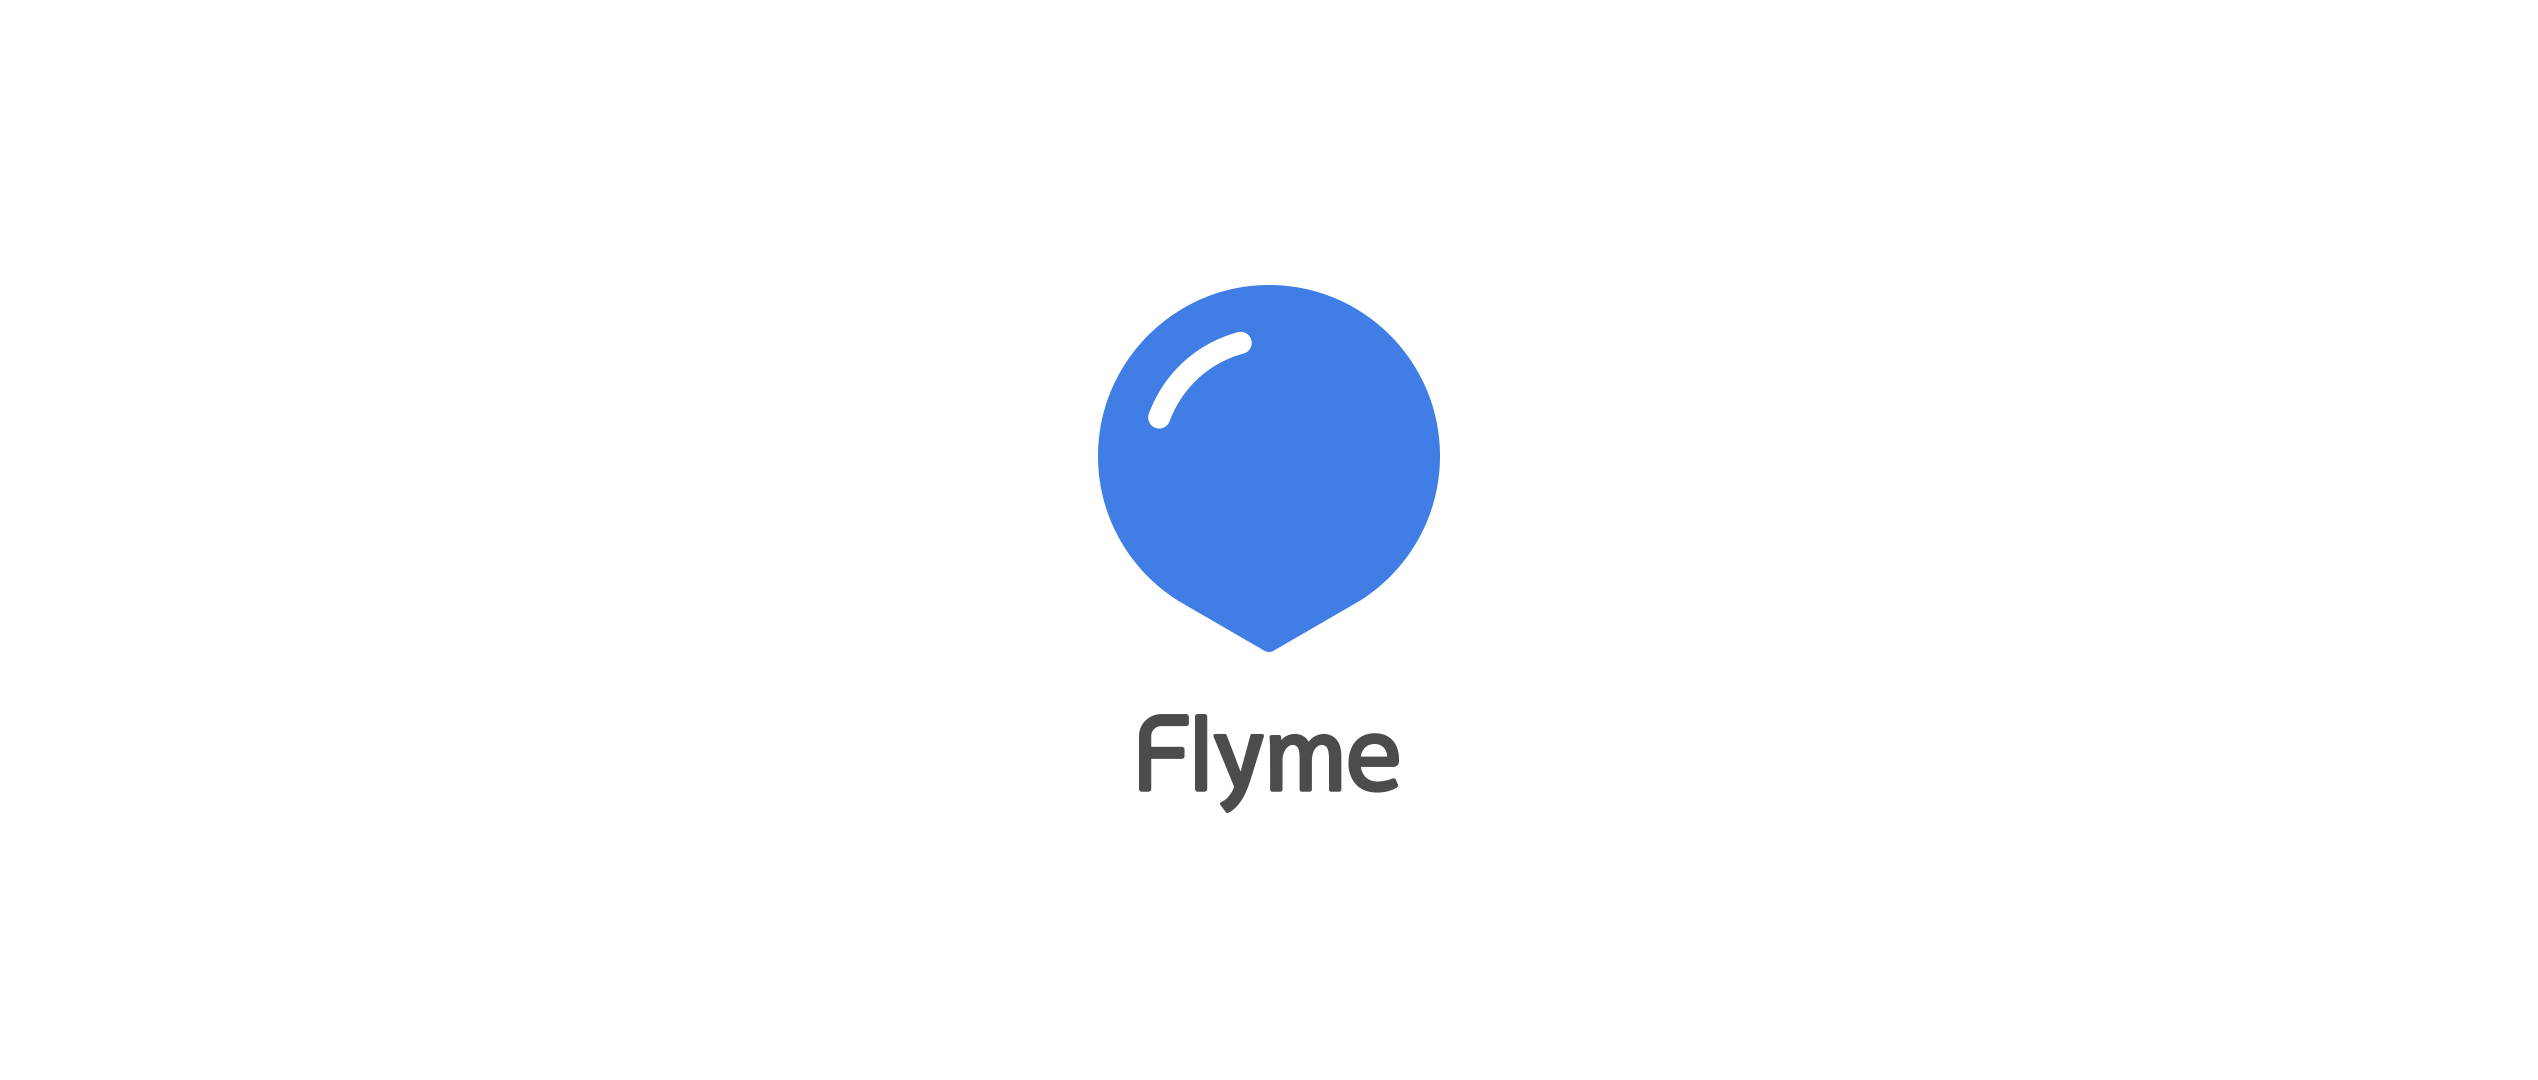 2016年的最后两天,flyme 向外界传达了什么